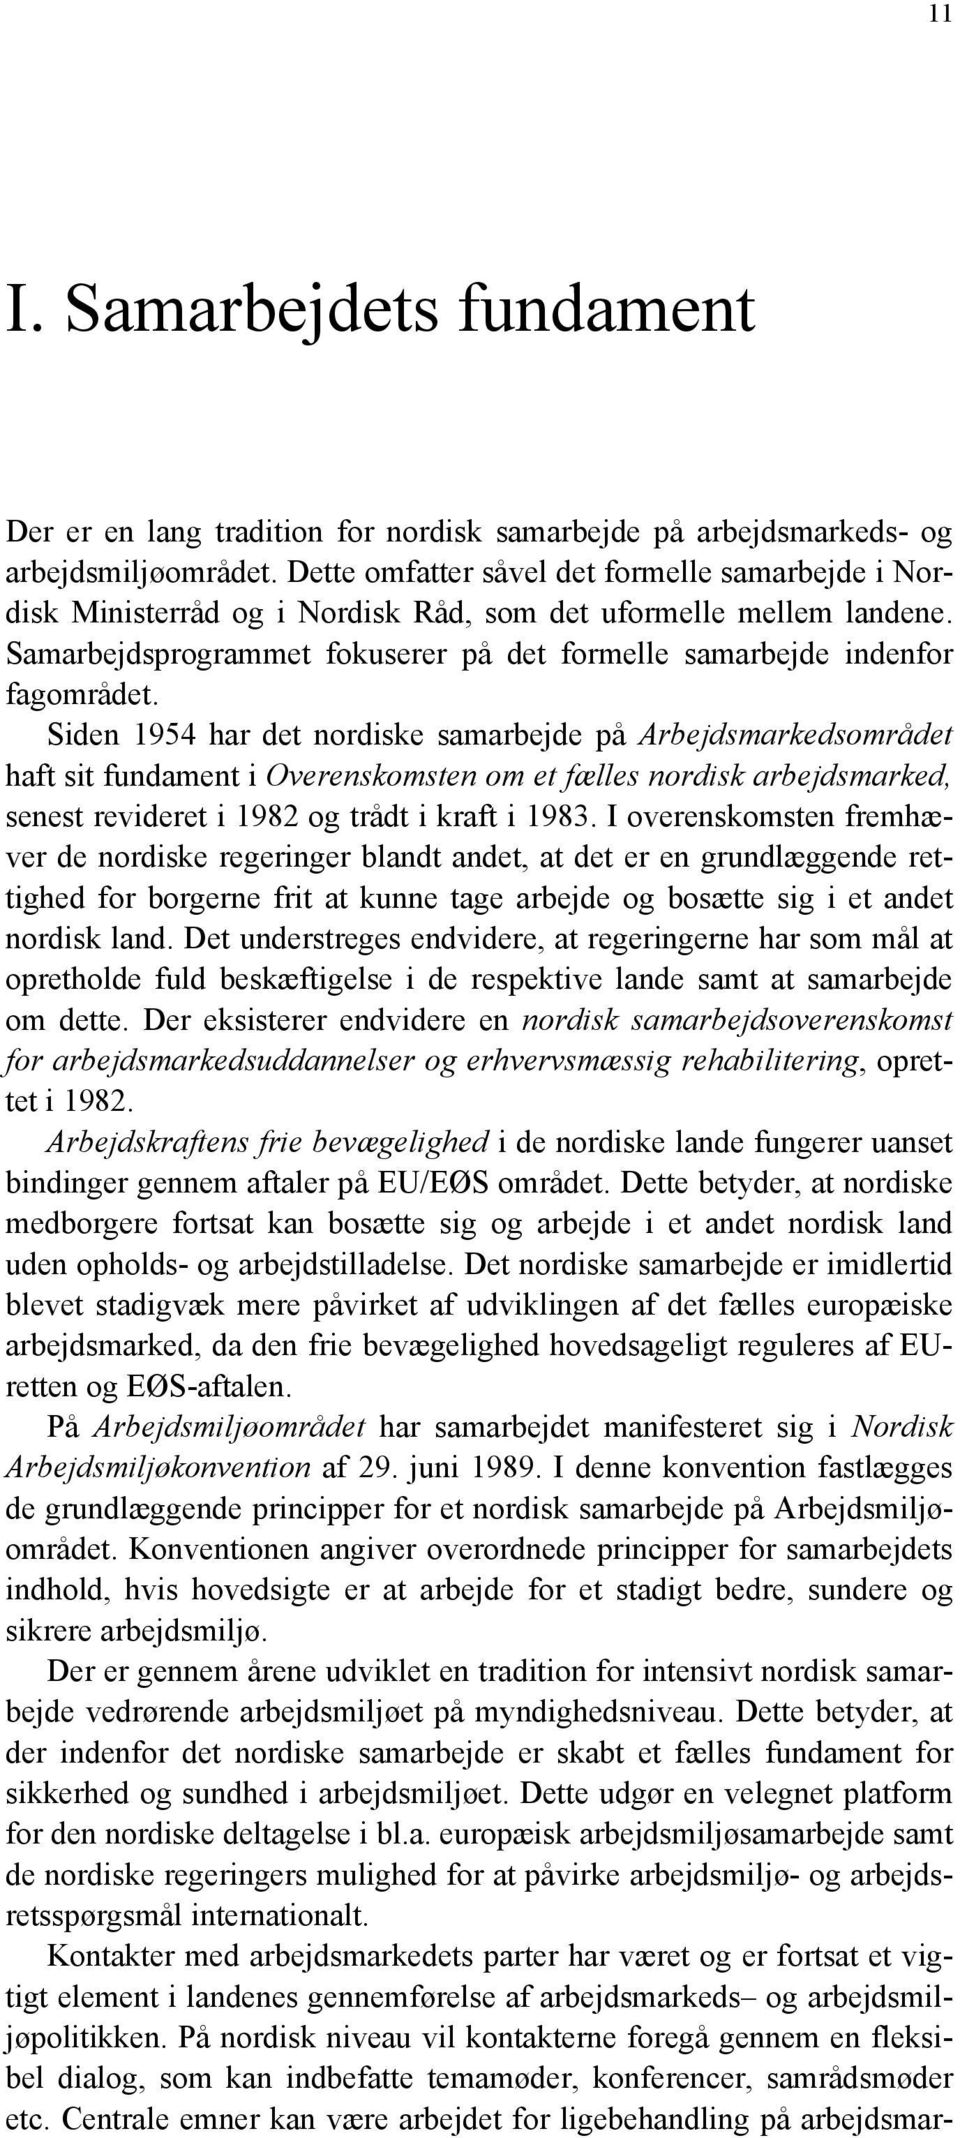 Siden 1954 har det nordiske samarbejde på Arbejdsmarkedsområdet haft sit fundament i Overenskomsten om et fælles nordisk arbejdsmarked, senest revideret i 1982 og trådt i kraft i 1983.